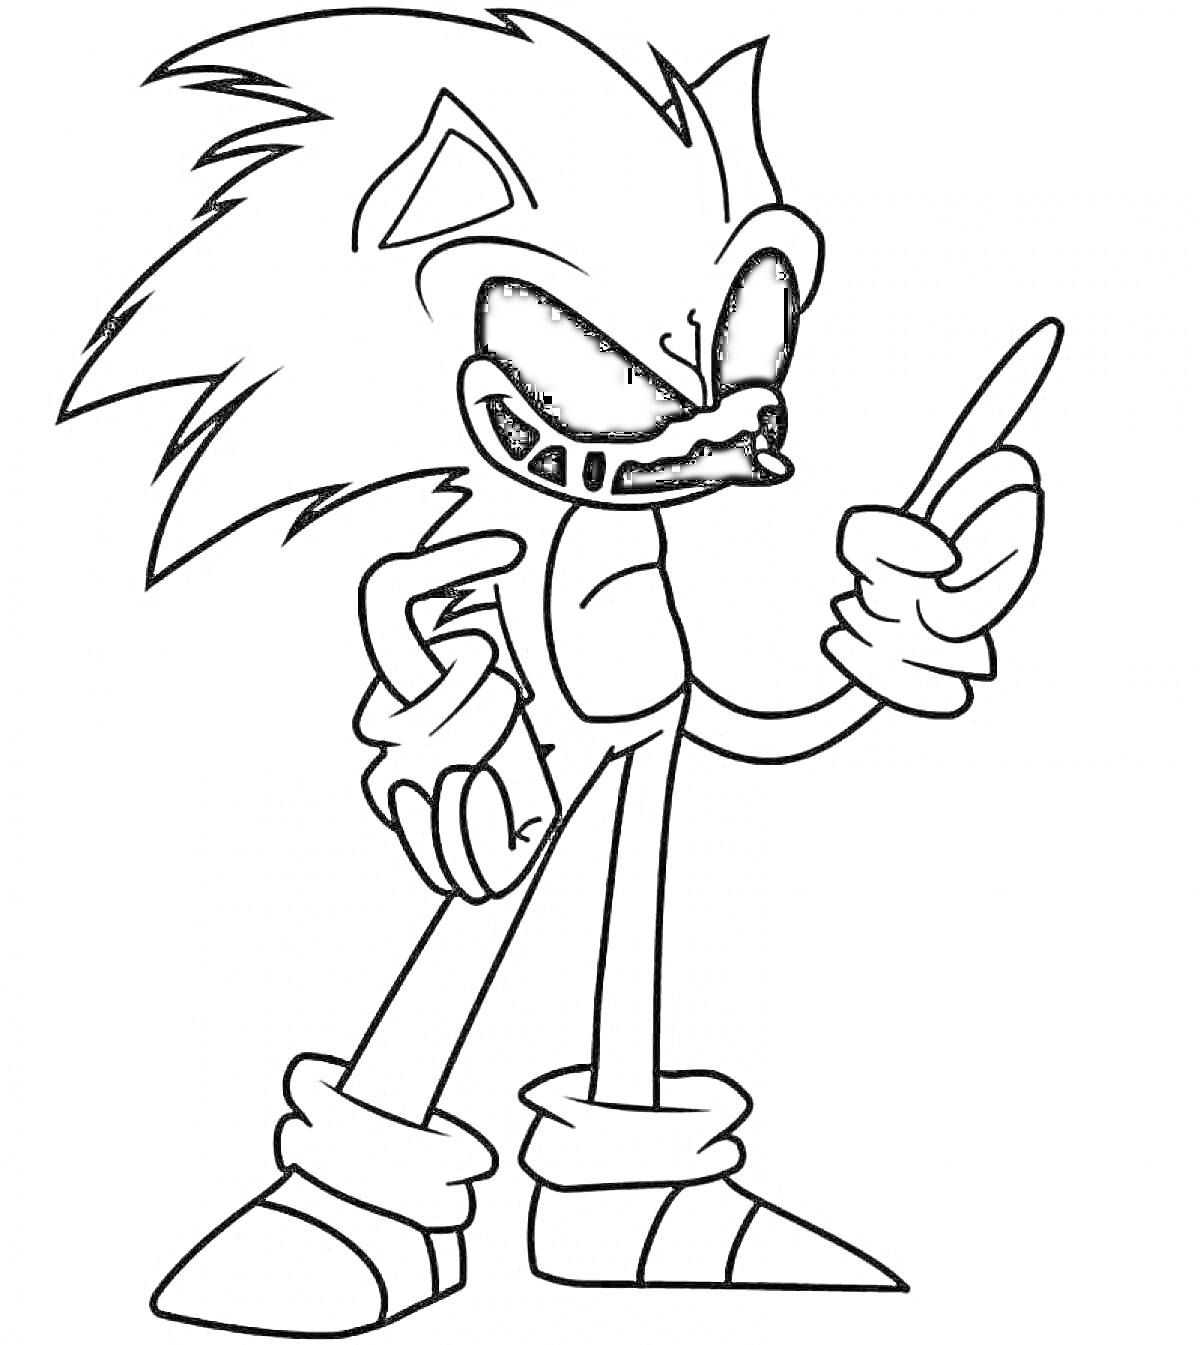 Раскраска Sonic.exe с указательным пальцем, зловещая улыбка, большие черные глаза, стоящий на ногах